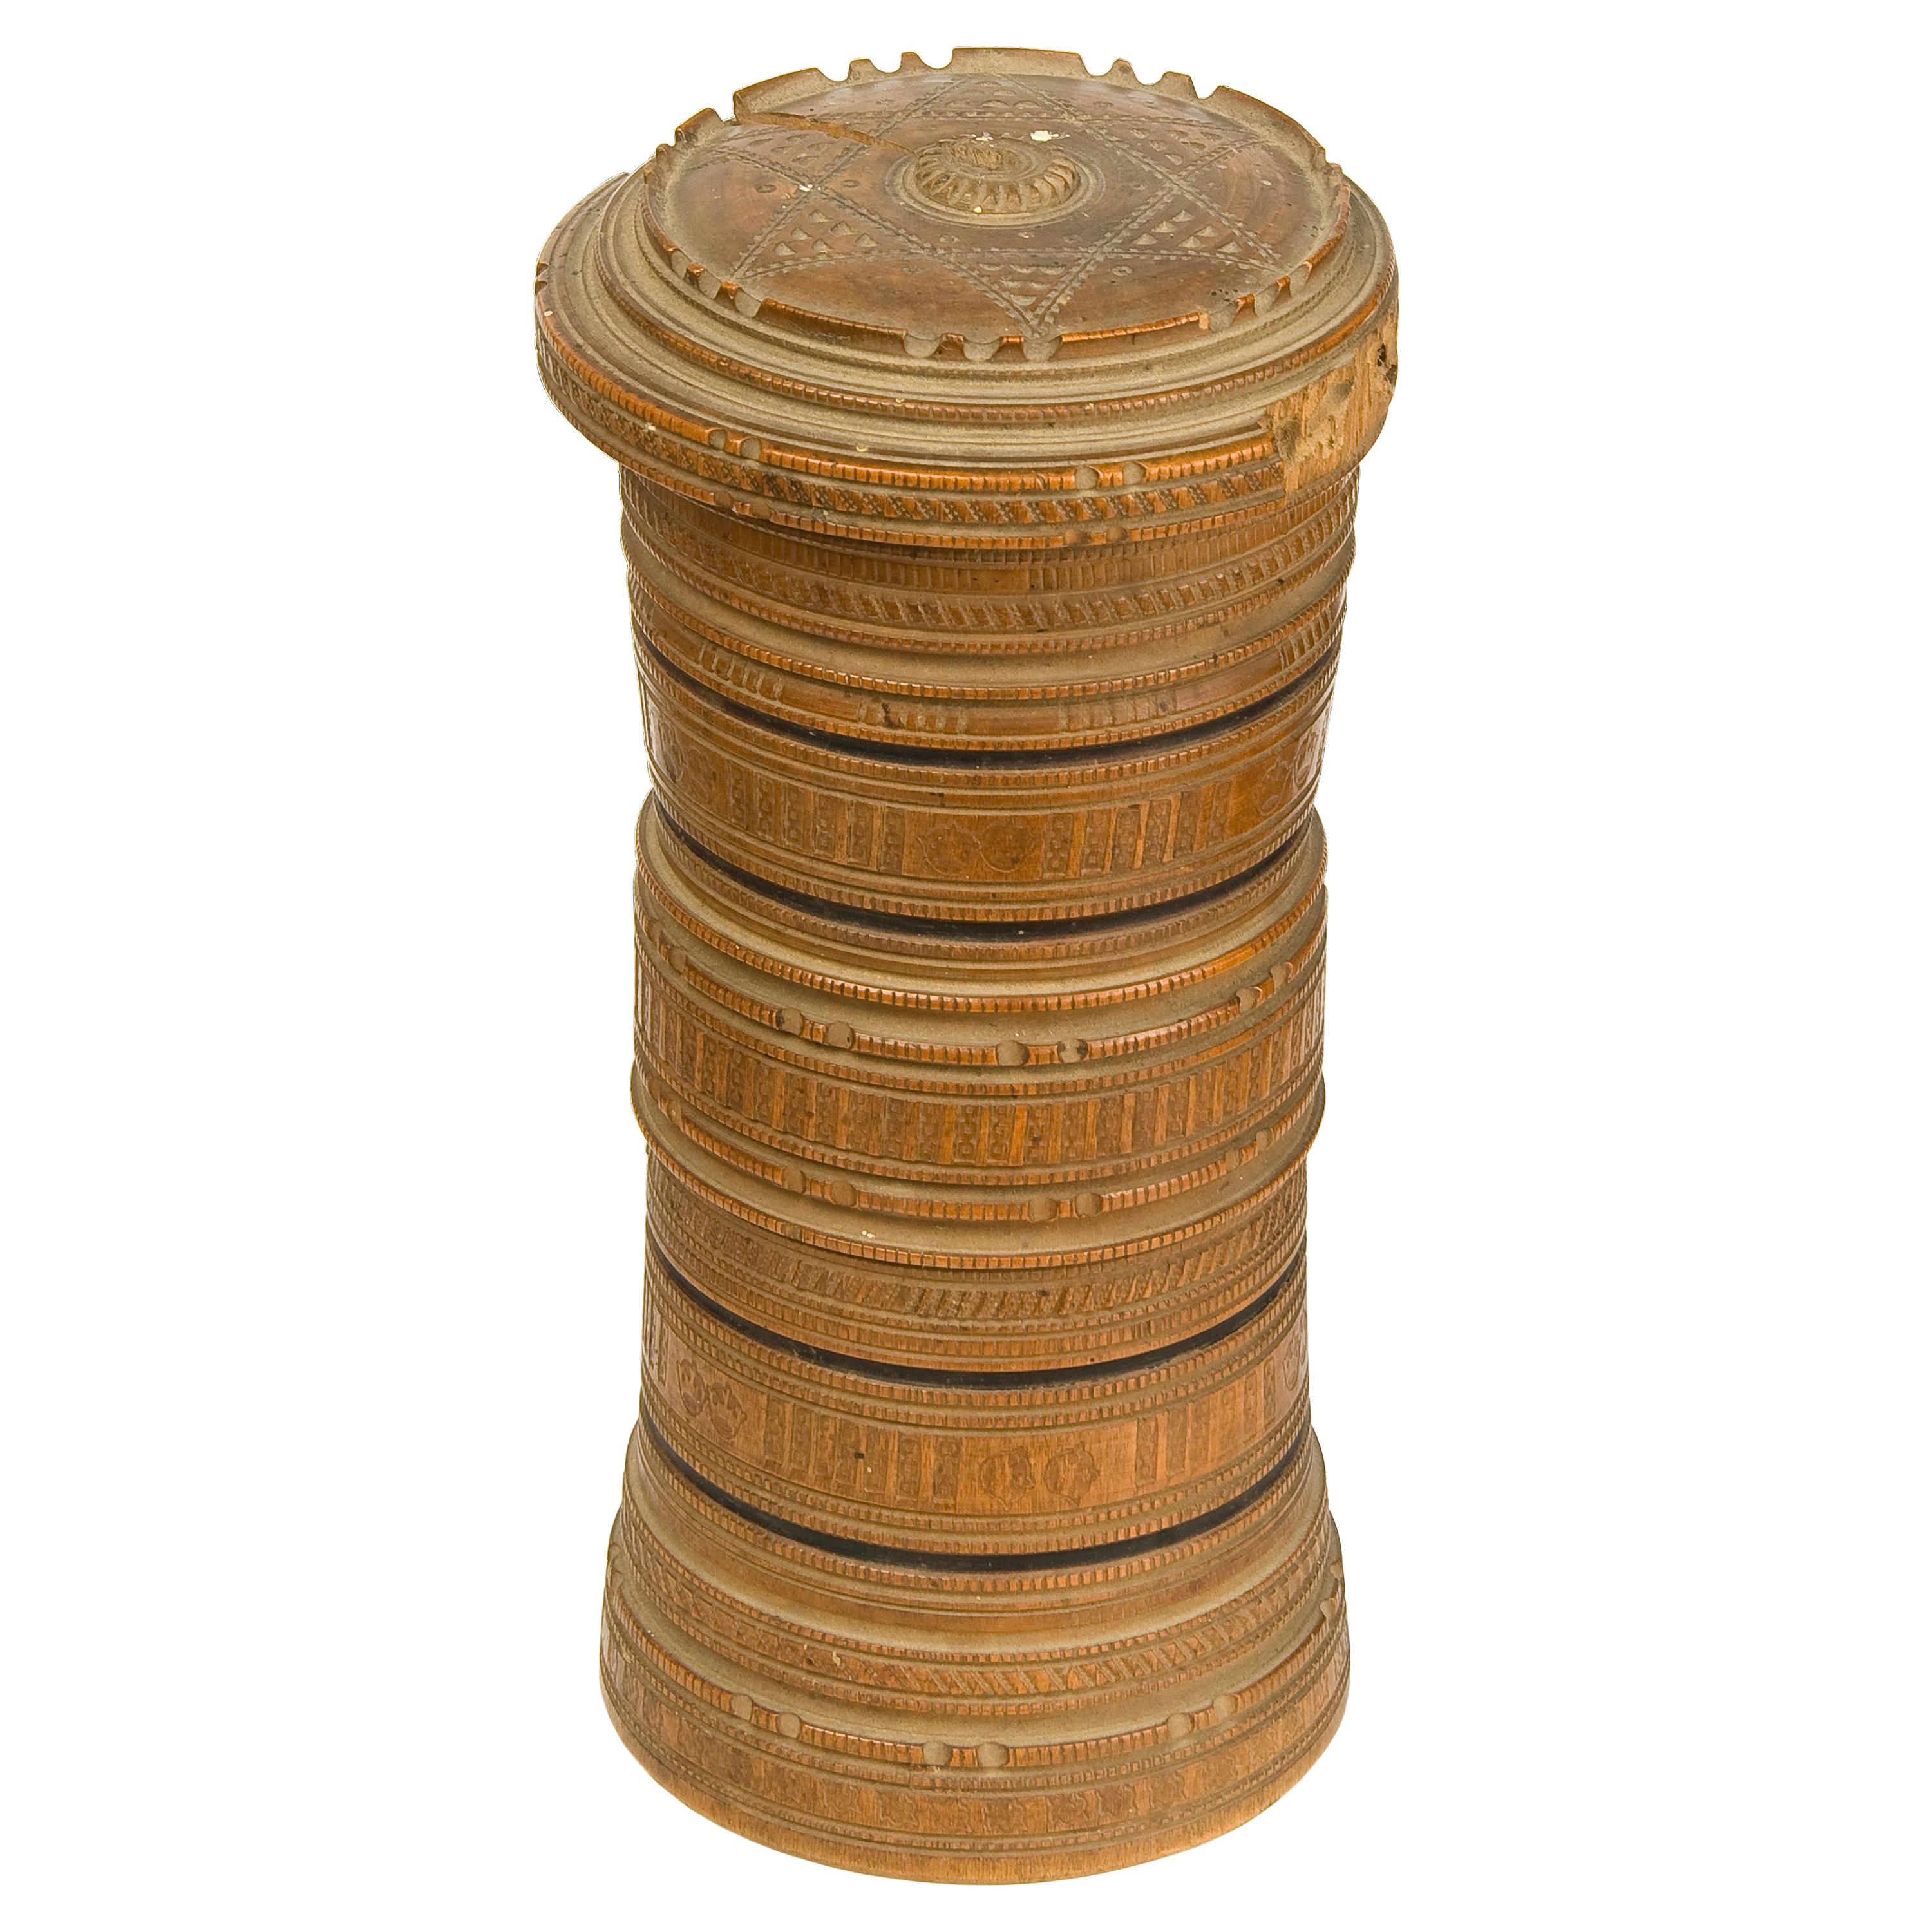 Zylindrische Holzschachtel zum Testen, 17.-18. Jahrhundert